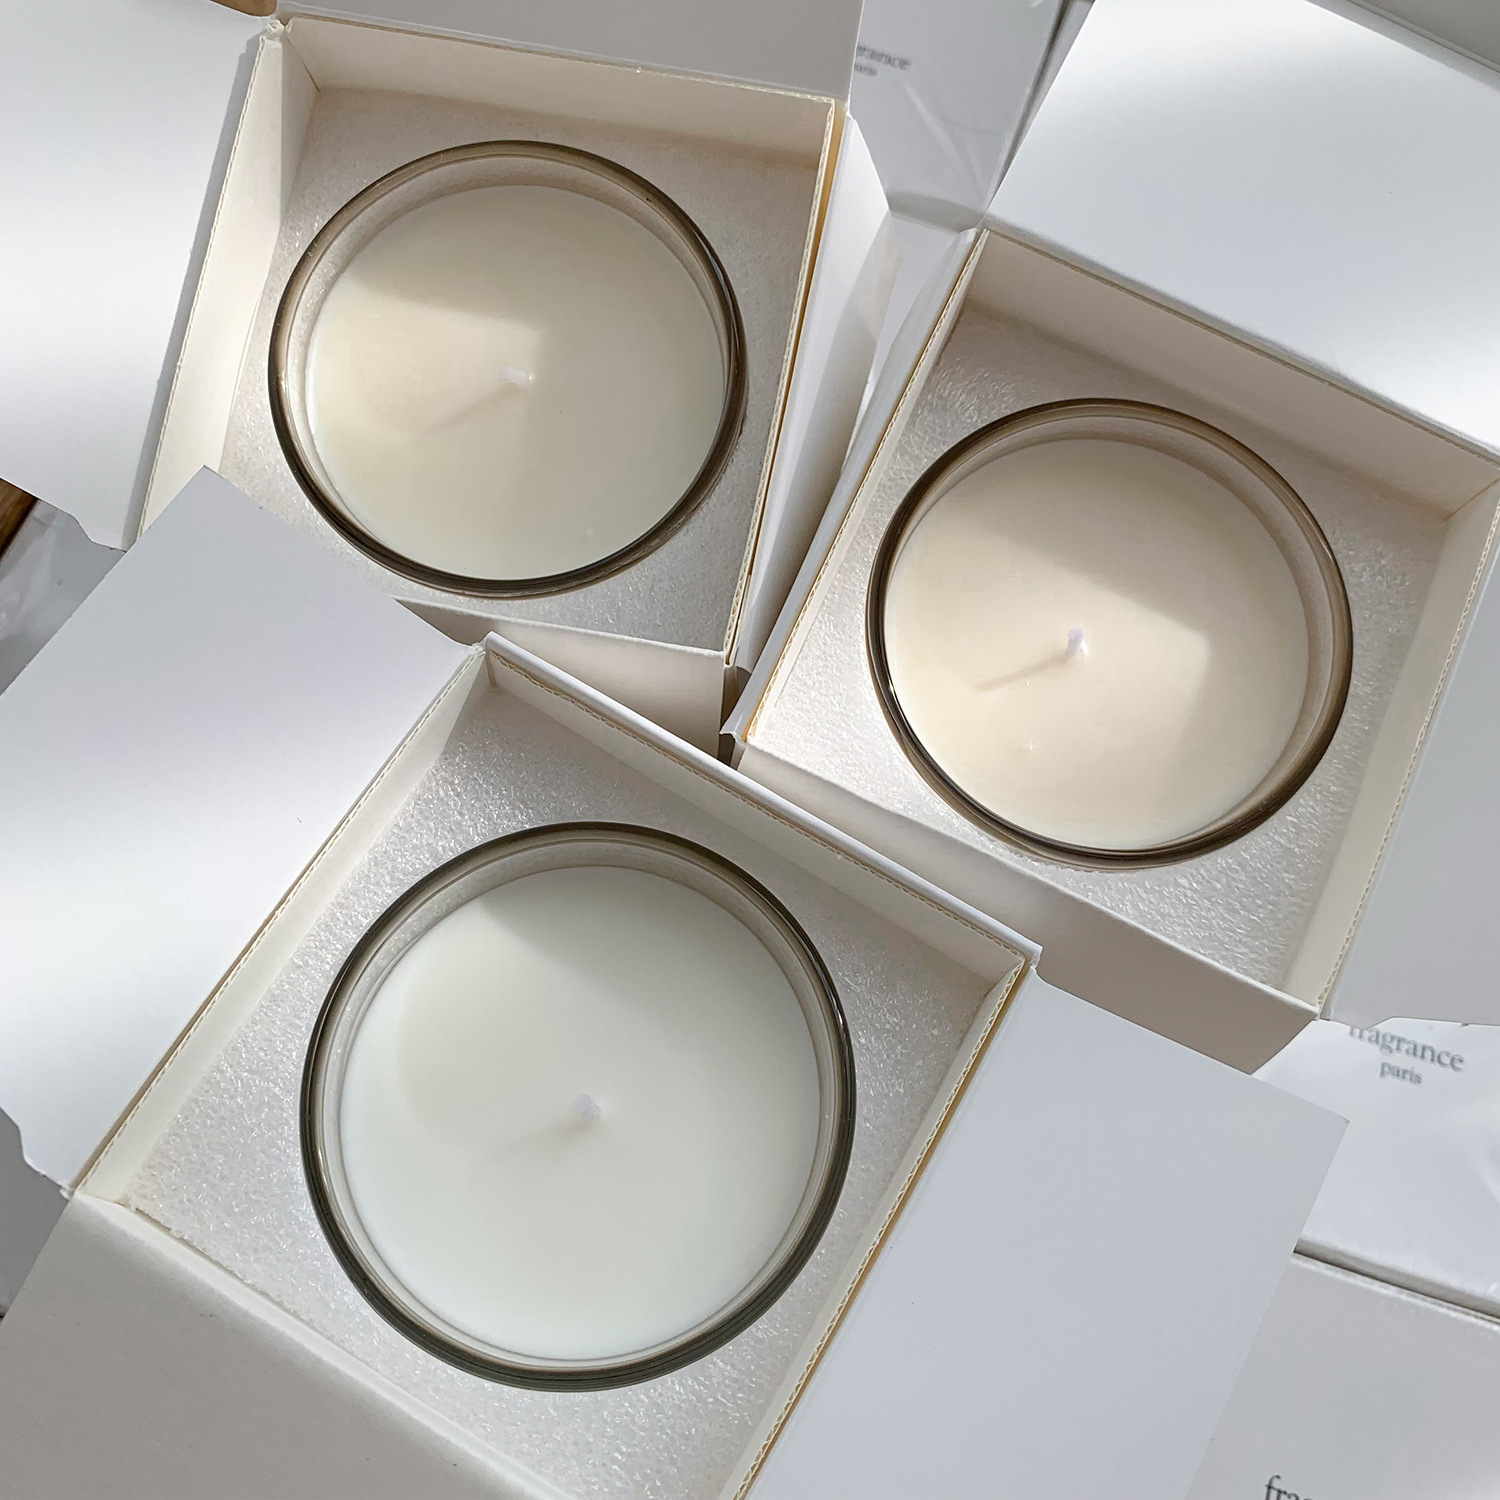 190 グラム香りキャンドルロマンチックな新鮮な光と香り持続エアフレグランスキャンドル家の装飾コレクションアロマセラピーギフト